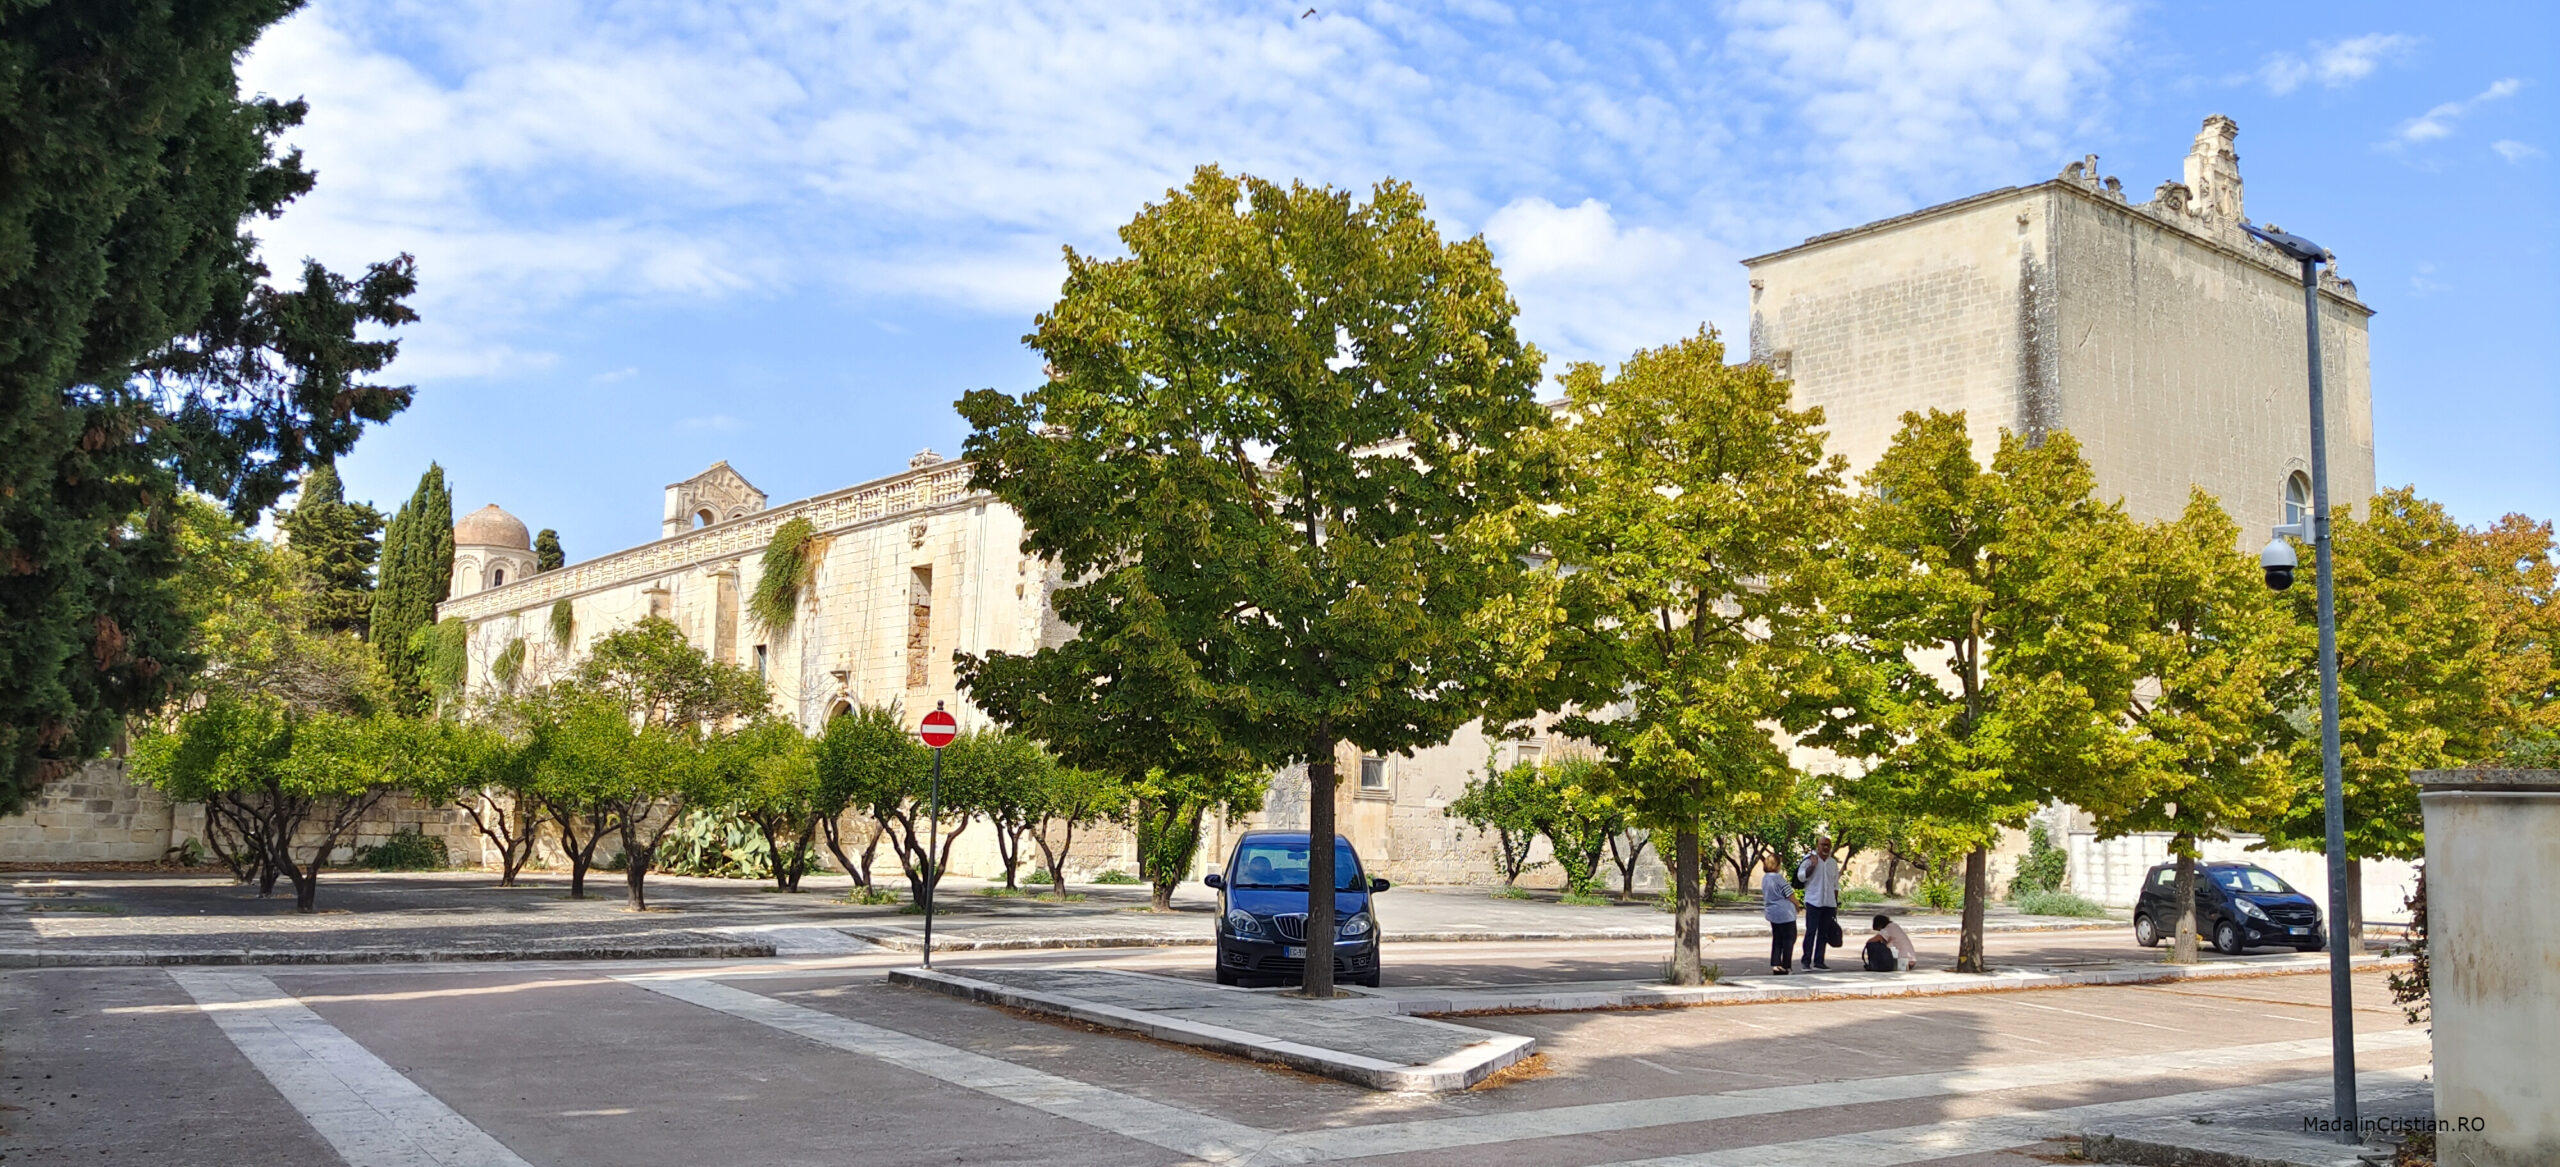 Universitate Salento Lecce 2